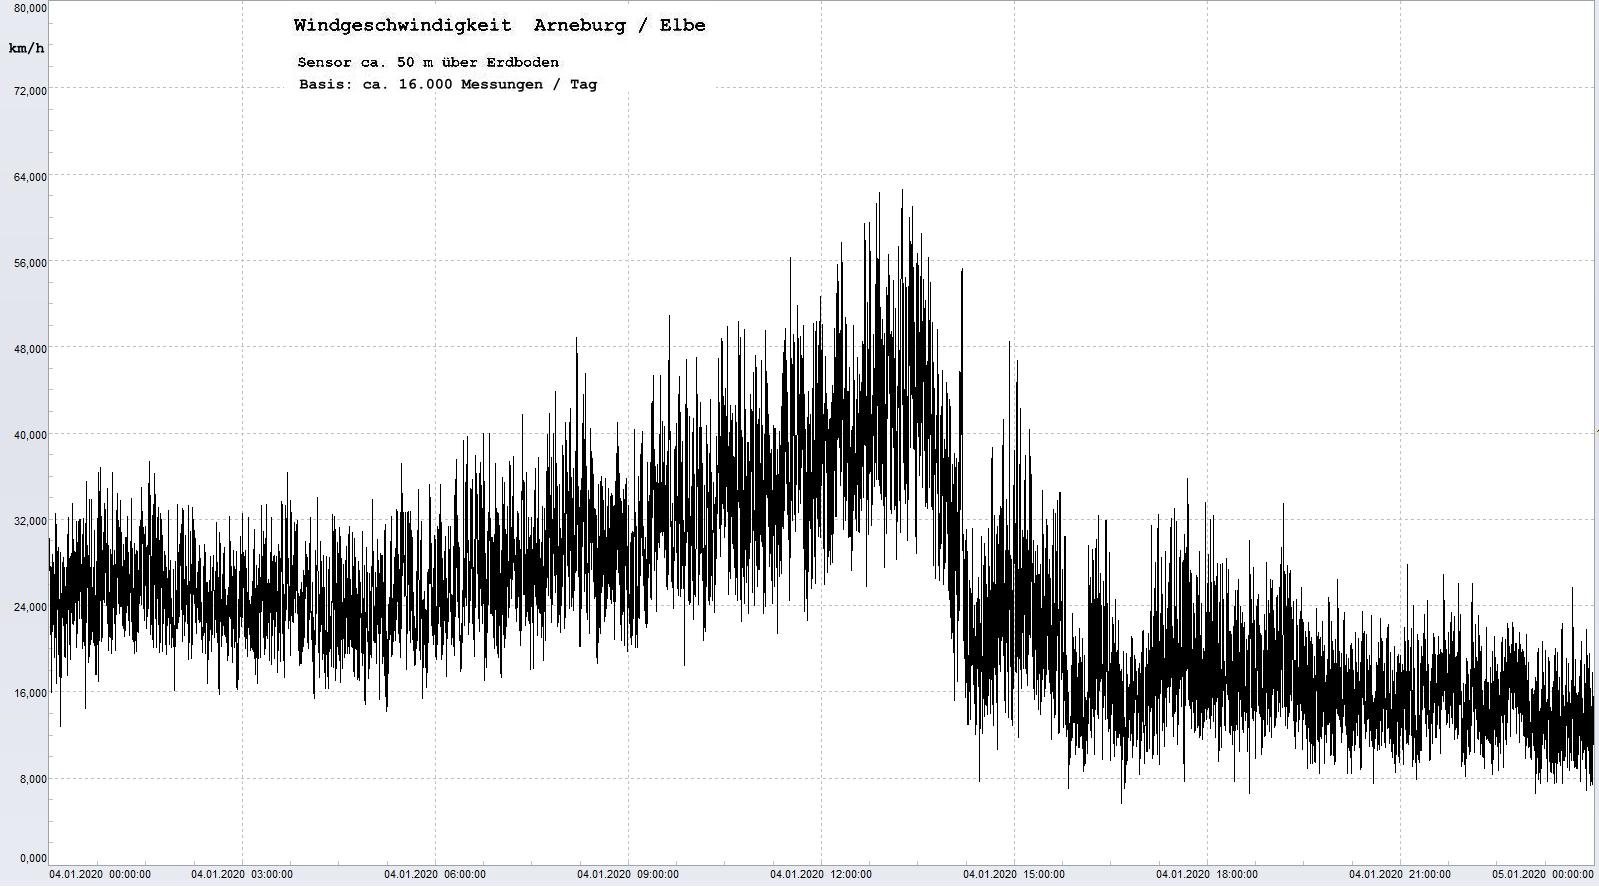 Arneburg Tages-Diagramm Winddaten, 04.01.2020
  Histogramm, Sensor auf Gebude, ca. 50 m ber Erdboden, Basis: 5s-Aufzeichnung